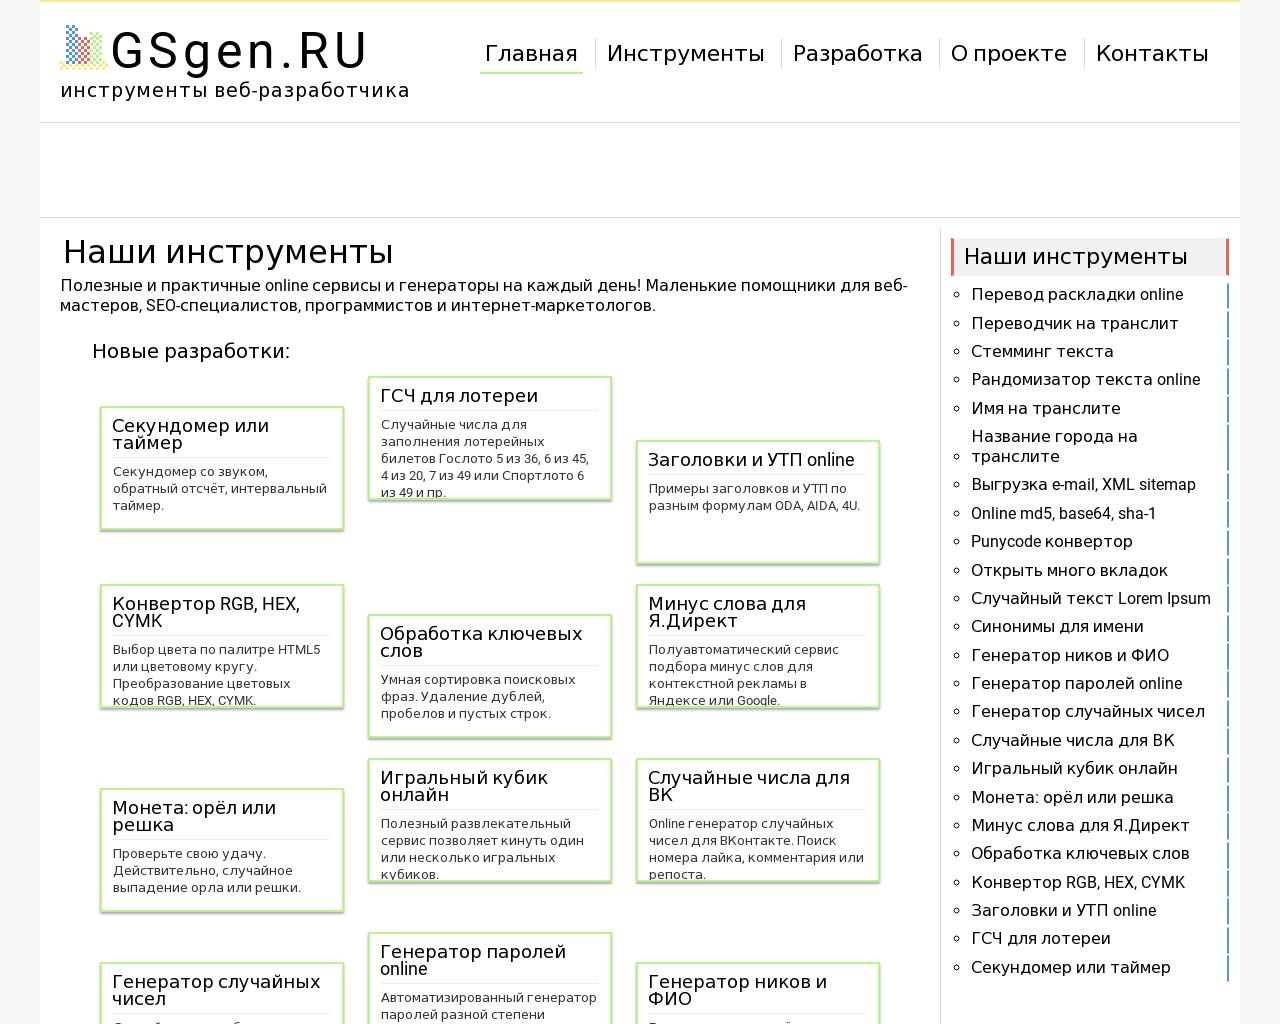 Изображение сайта gsgen.ru в разрешении 1280x1024